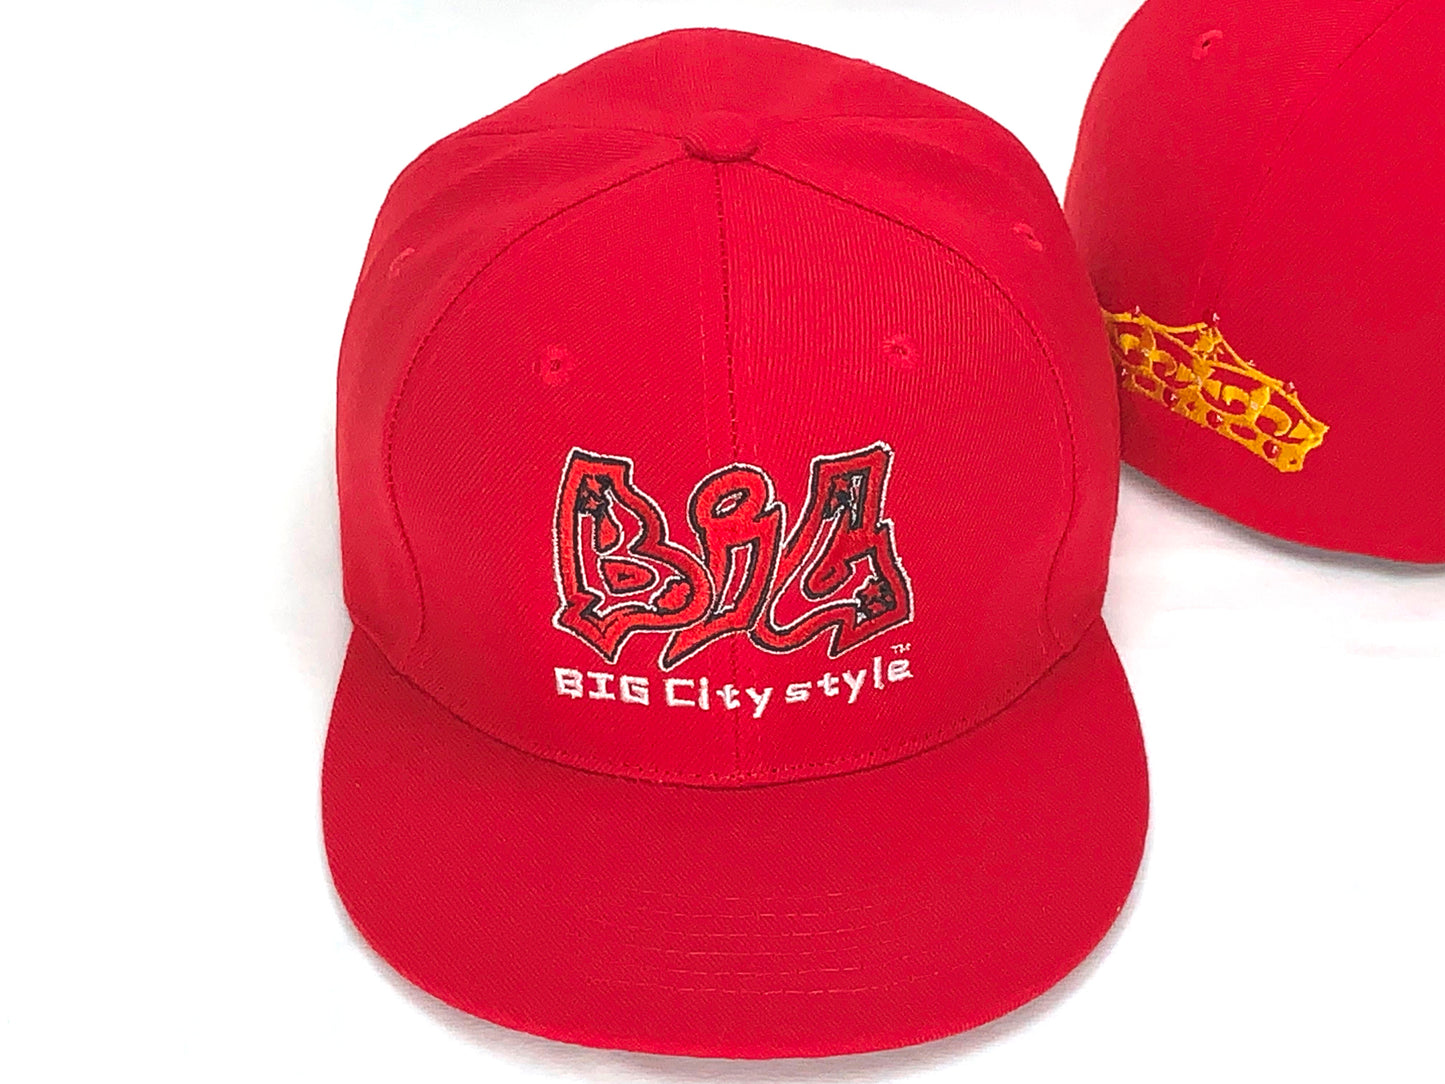 BIG City fit caps